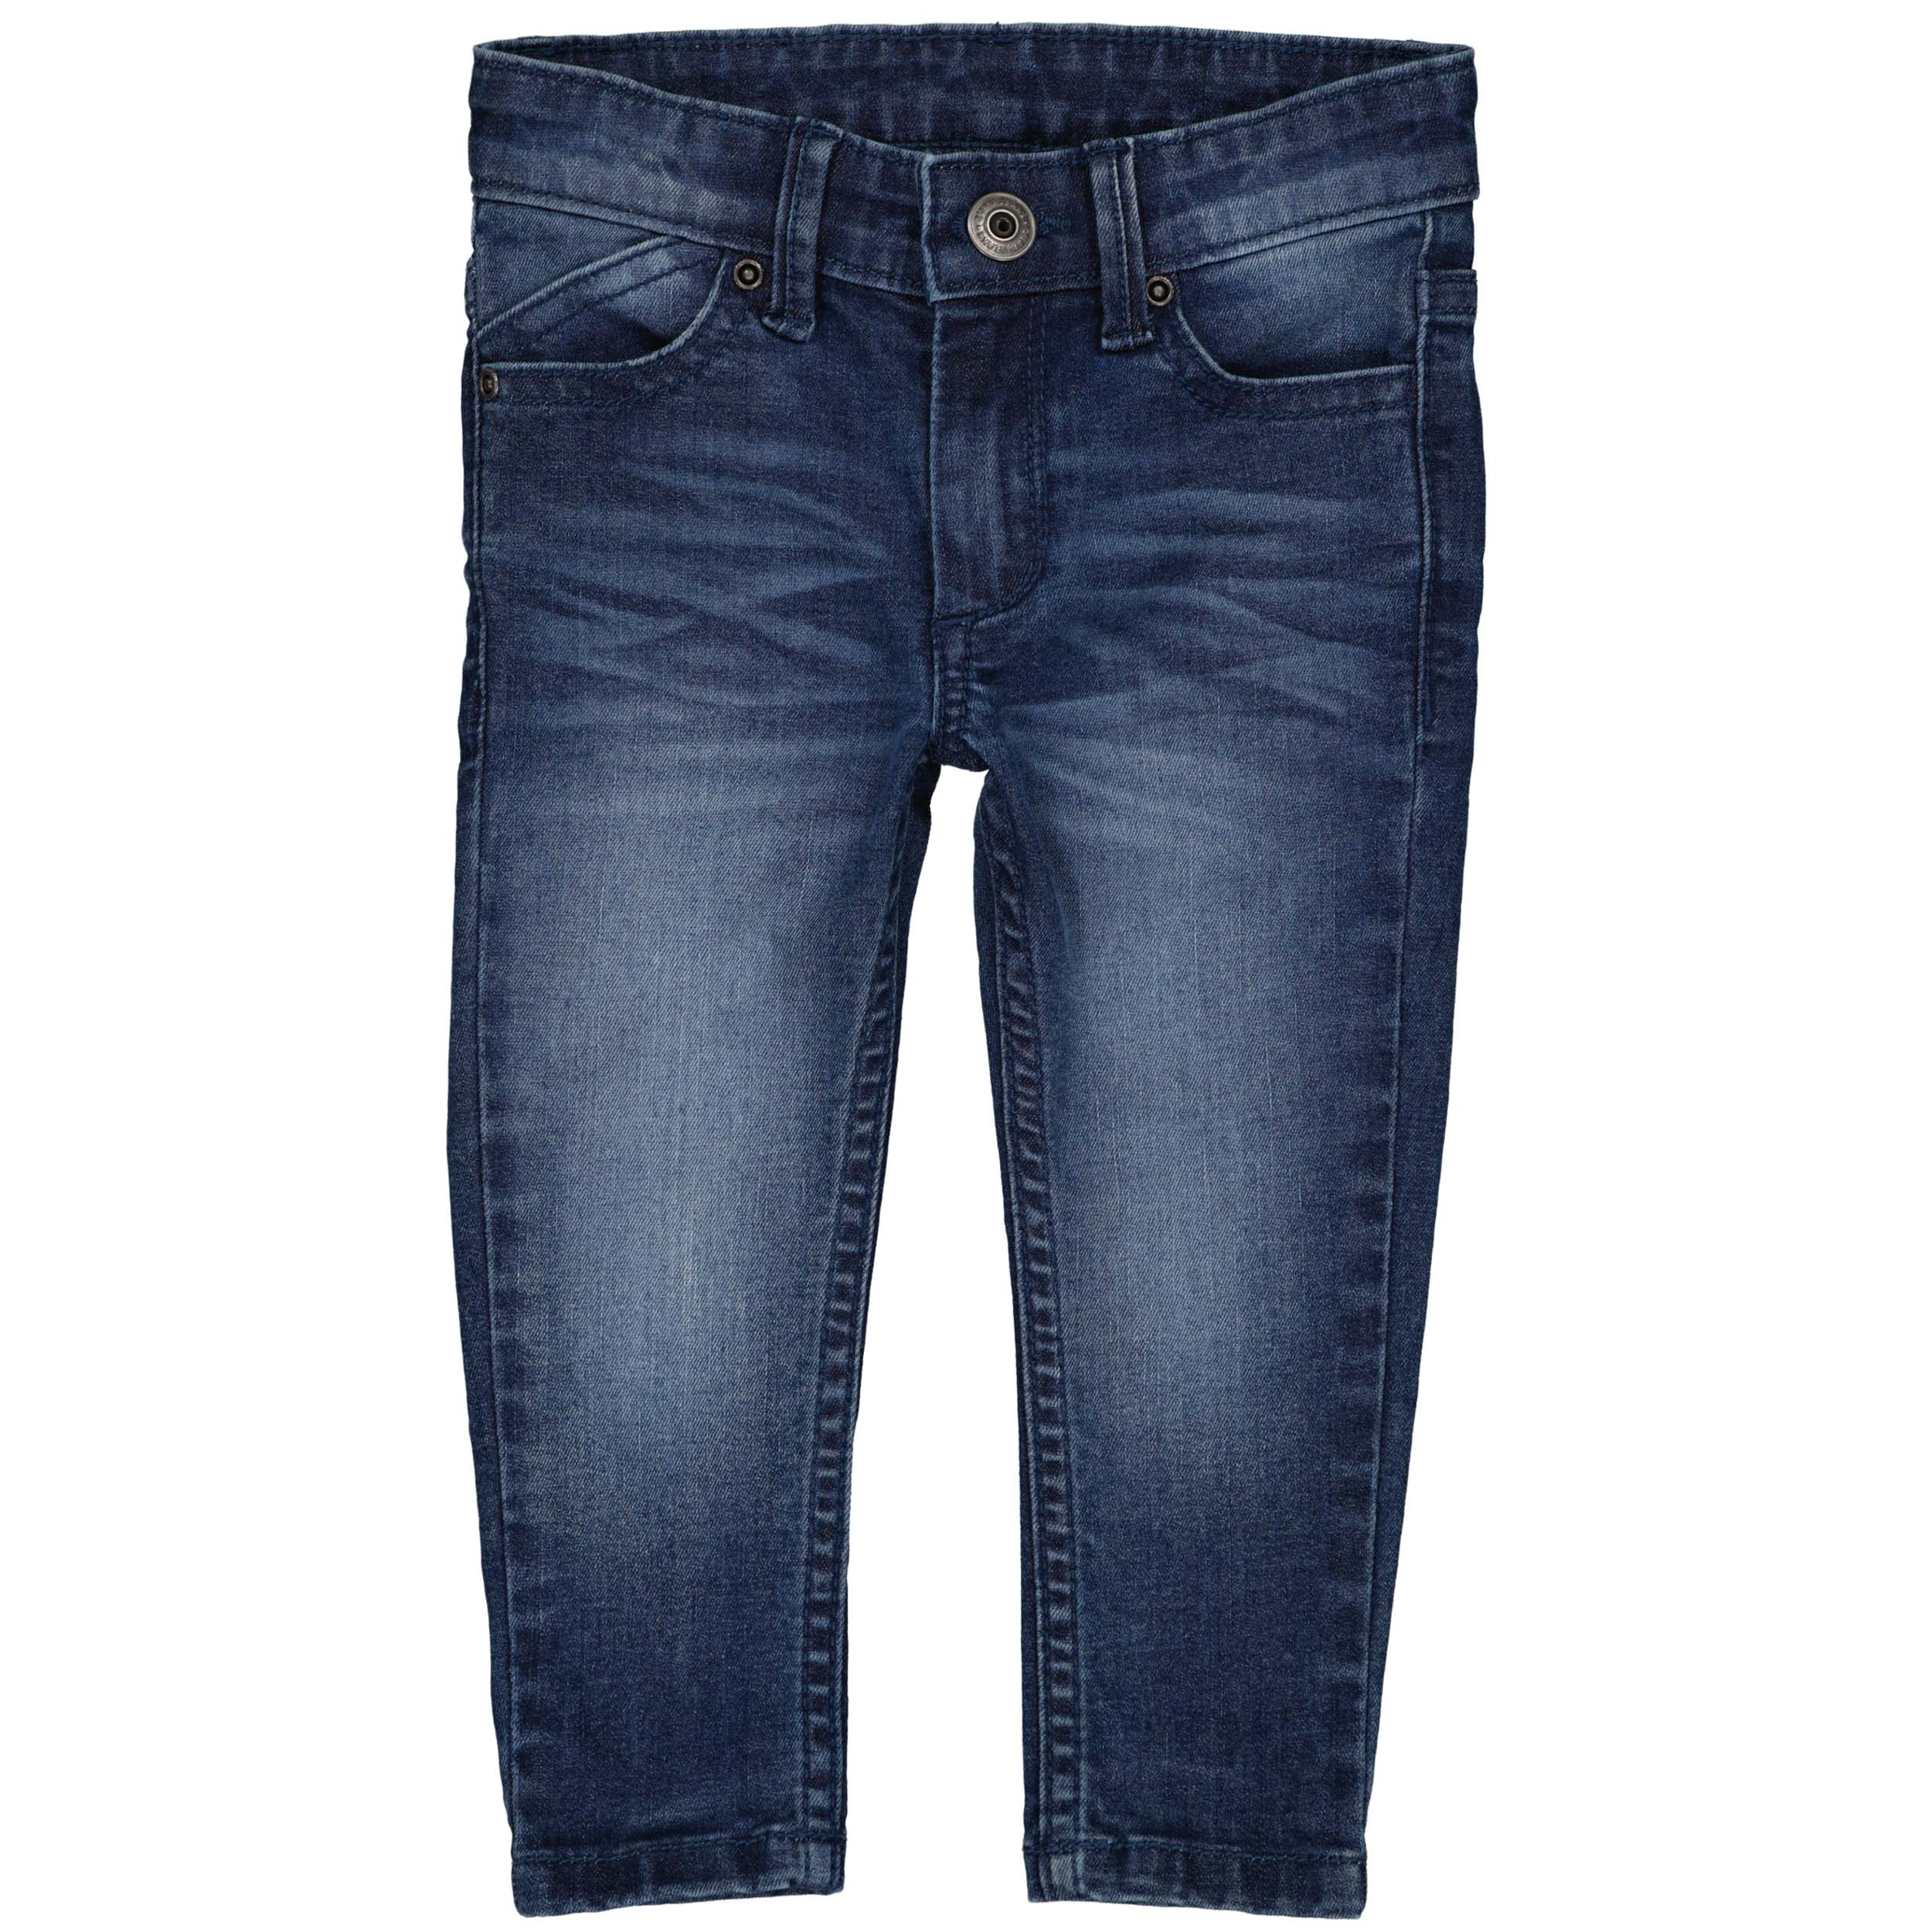 Jongens Jeans SYMENW221 van  in de kleur Blue Dark Denim in maat 86.